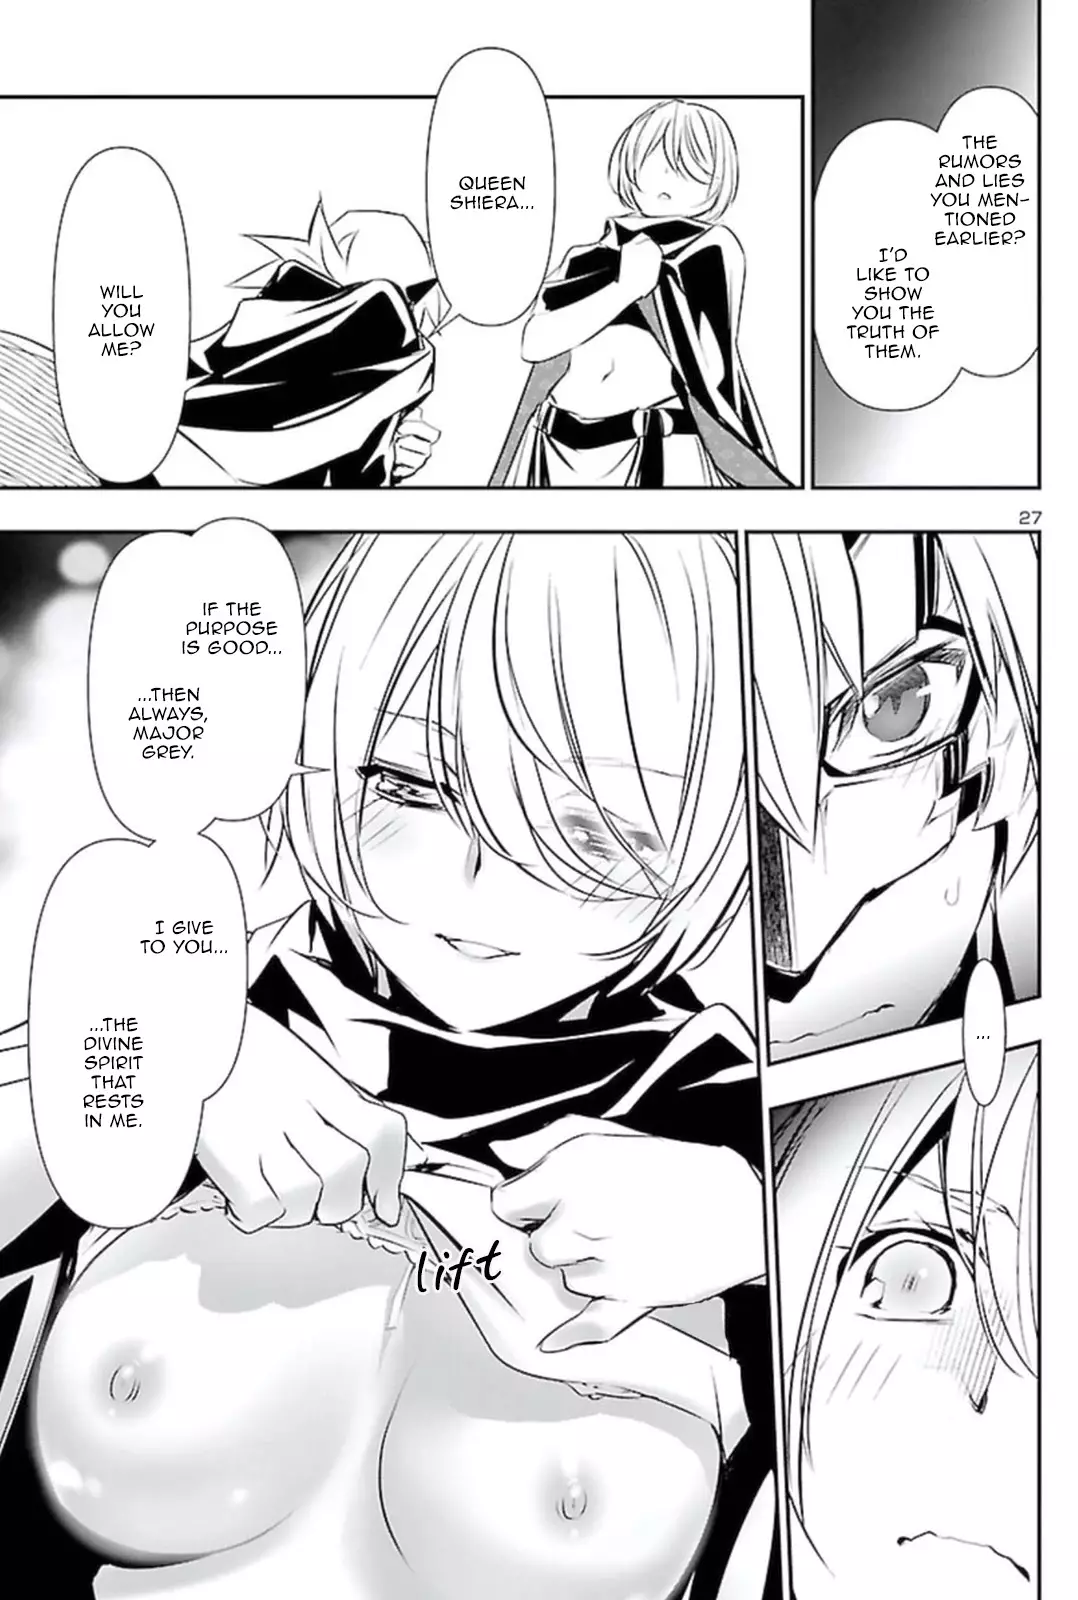 Shinju no Nectar - 59 page 26-5988d16f